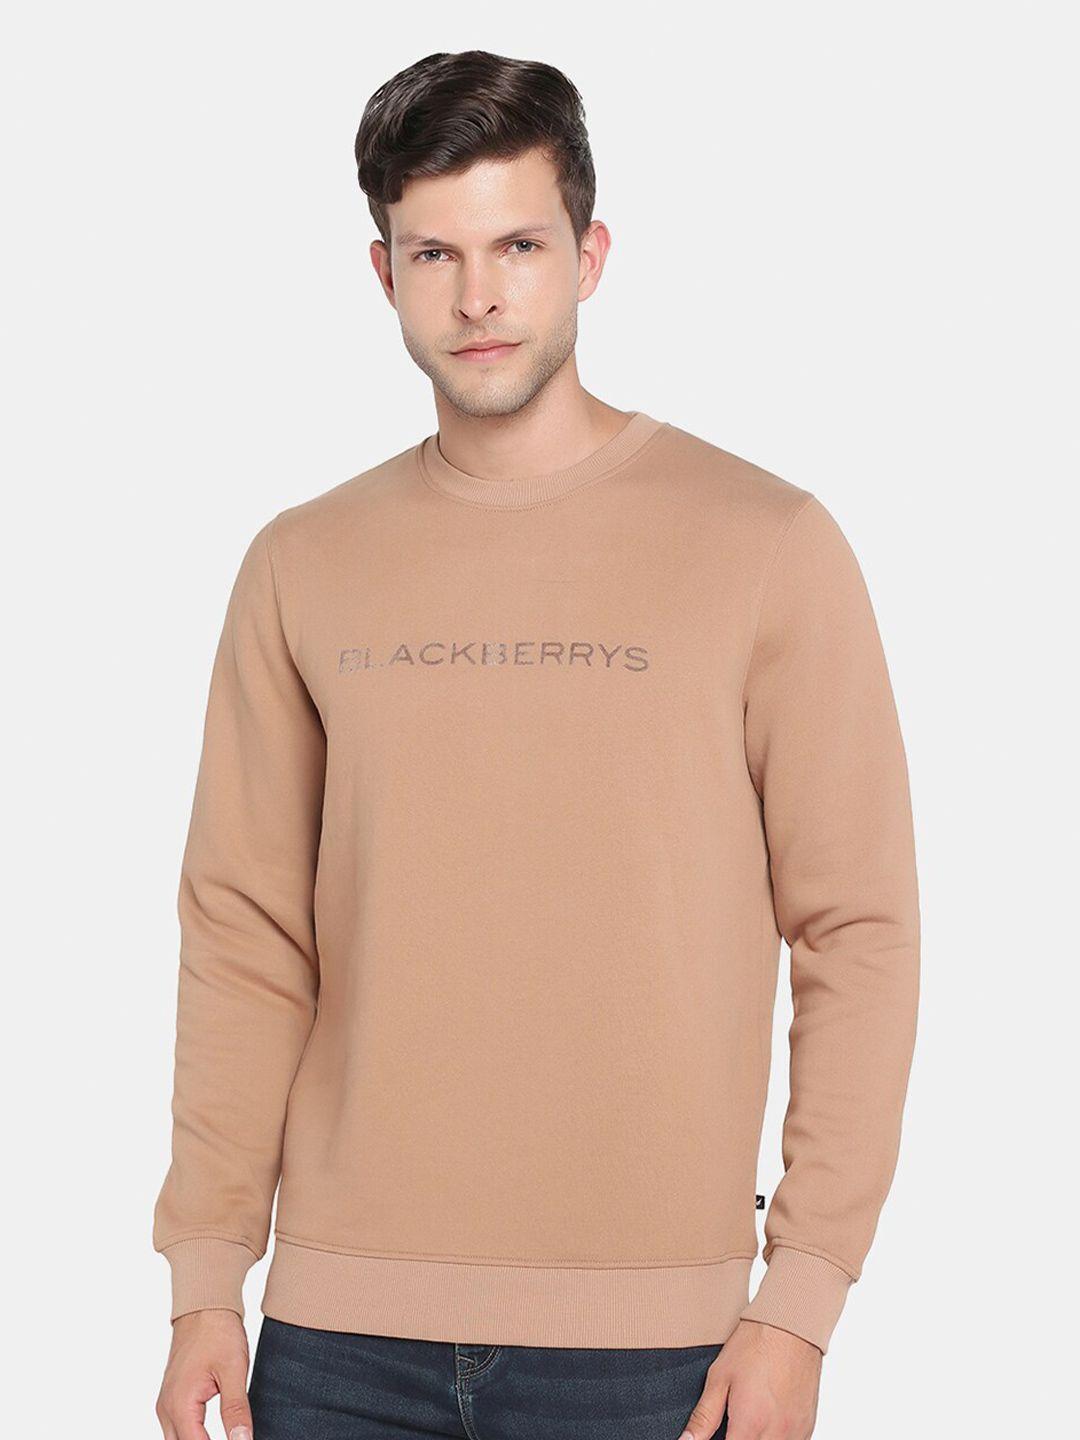 blackberrys men printed sweatshirt